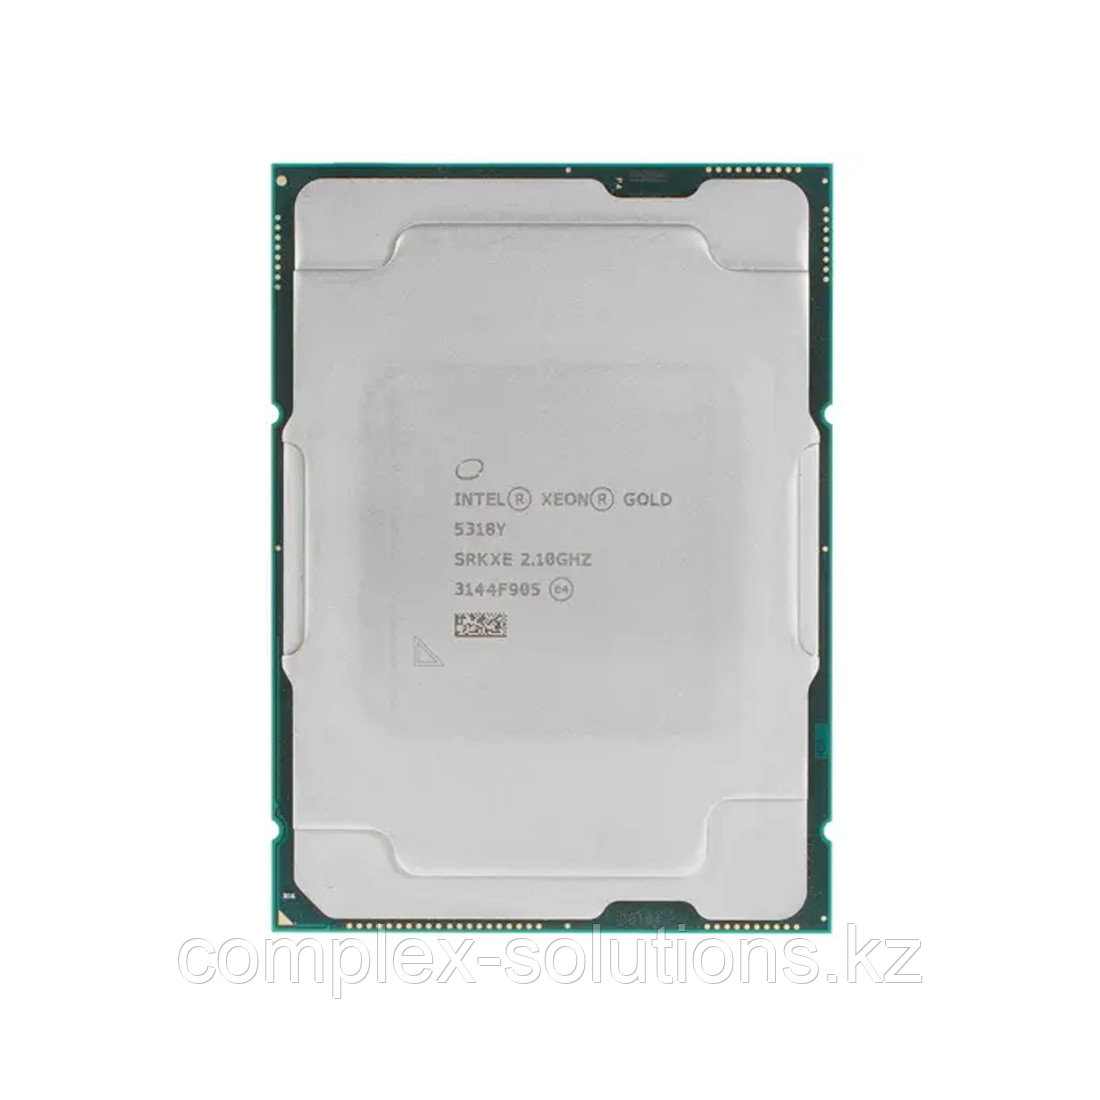 Центральный процессор [CPU] Intel Xeon Gold Processor 5318Y